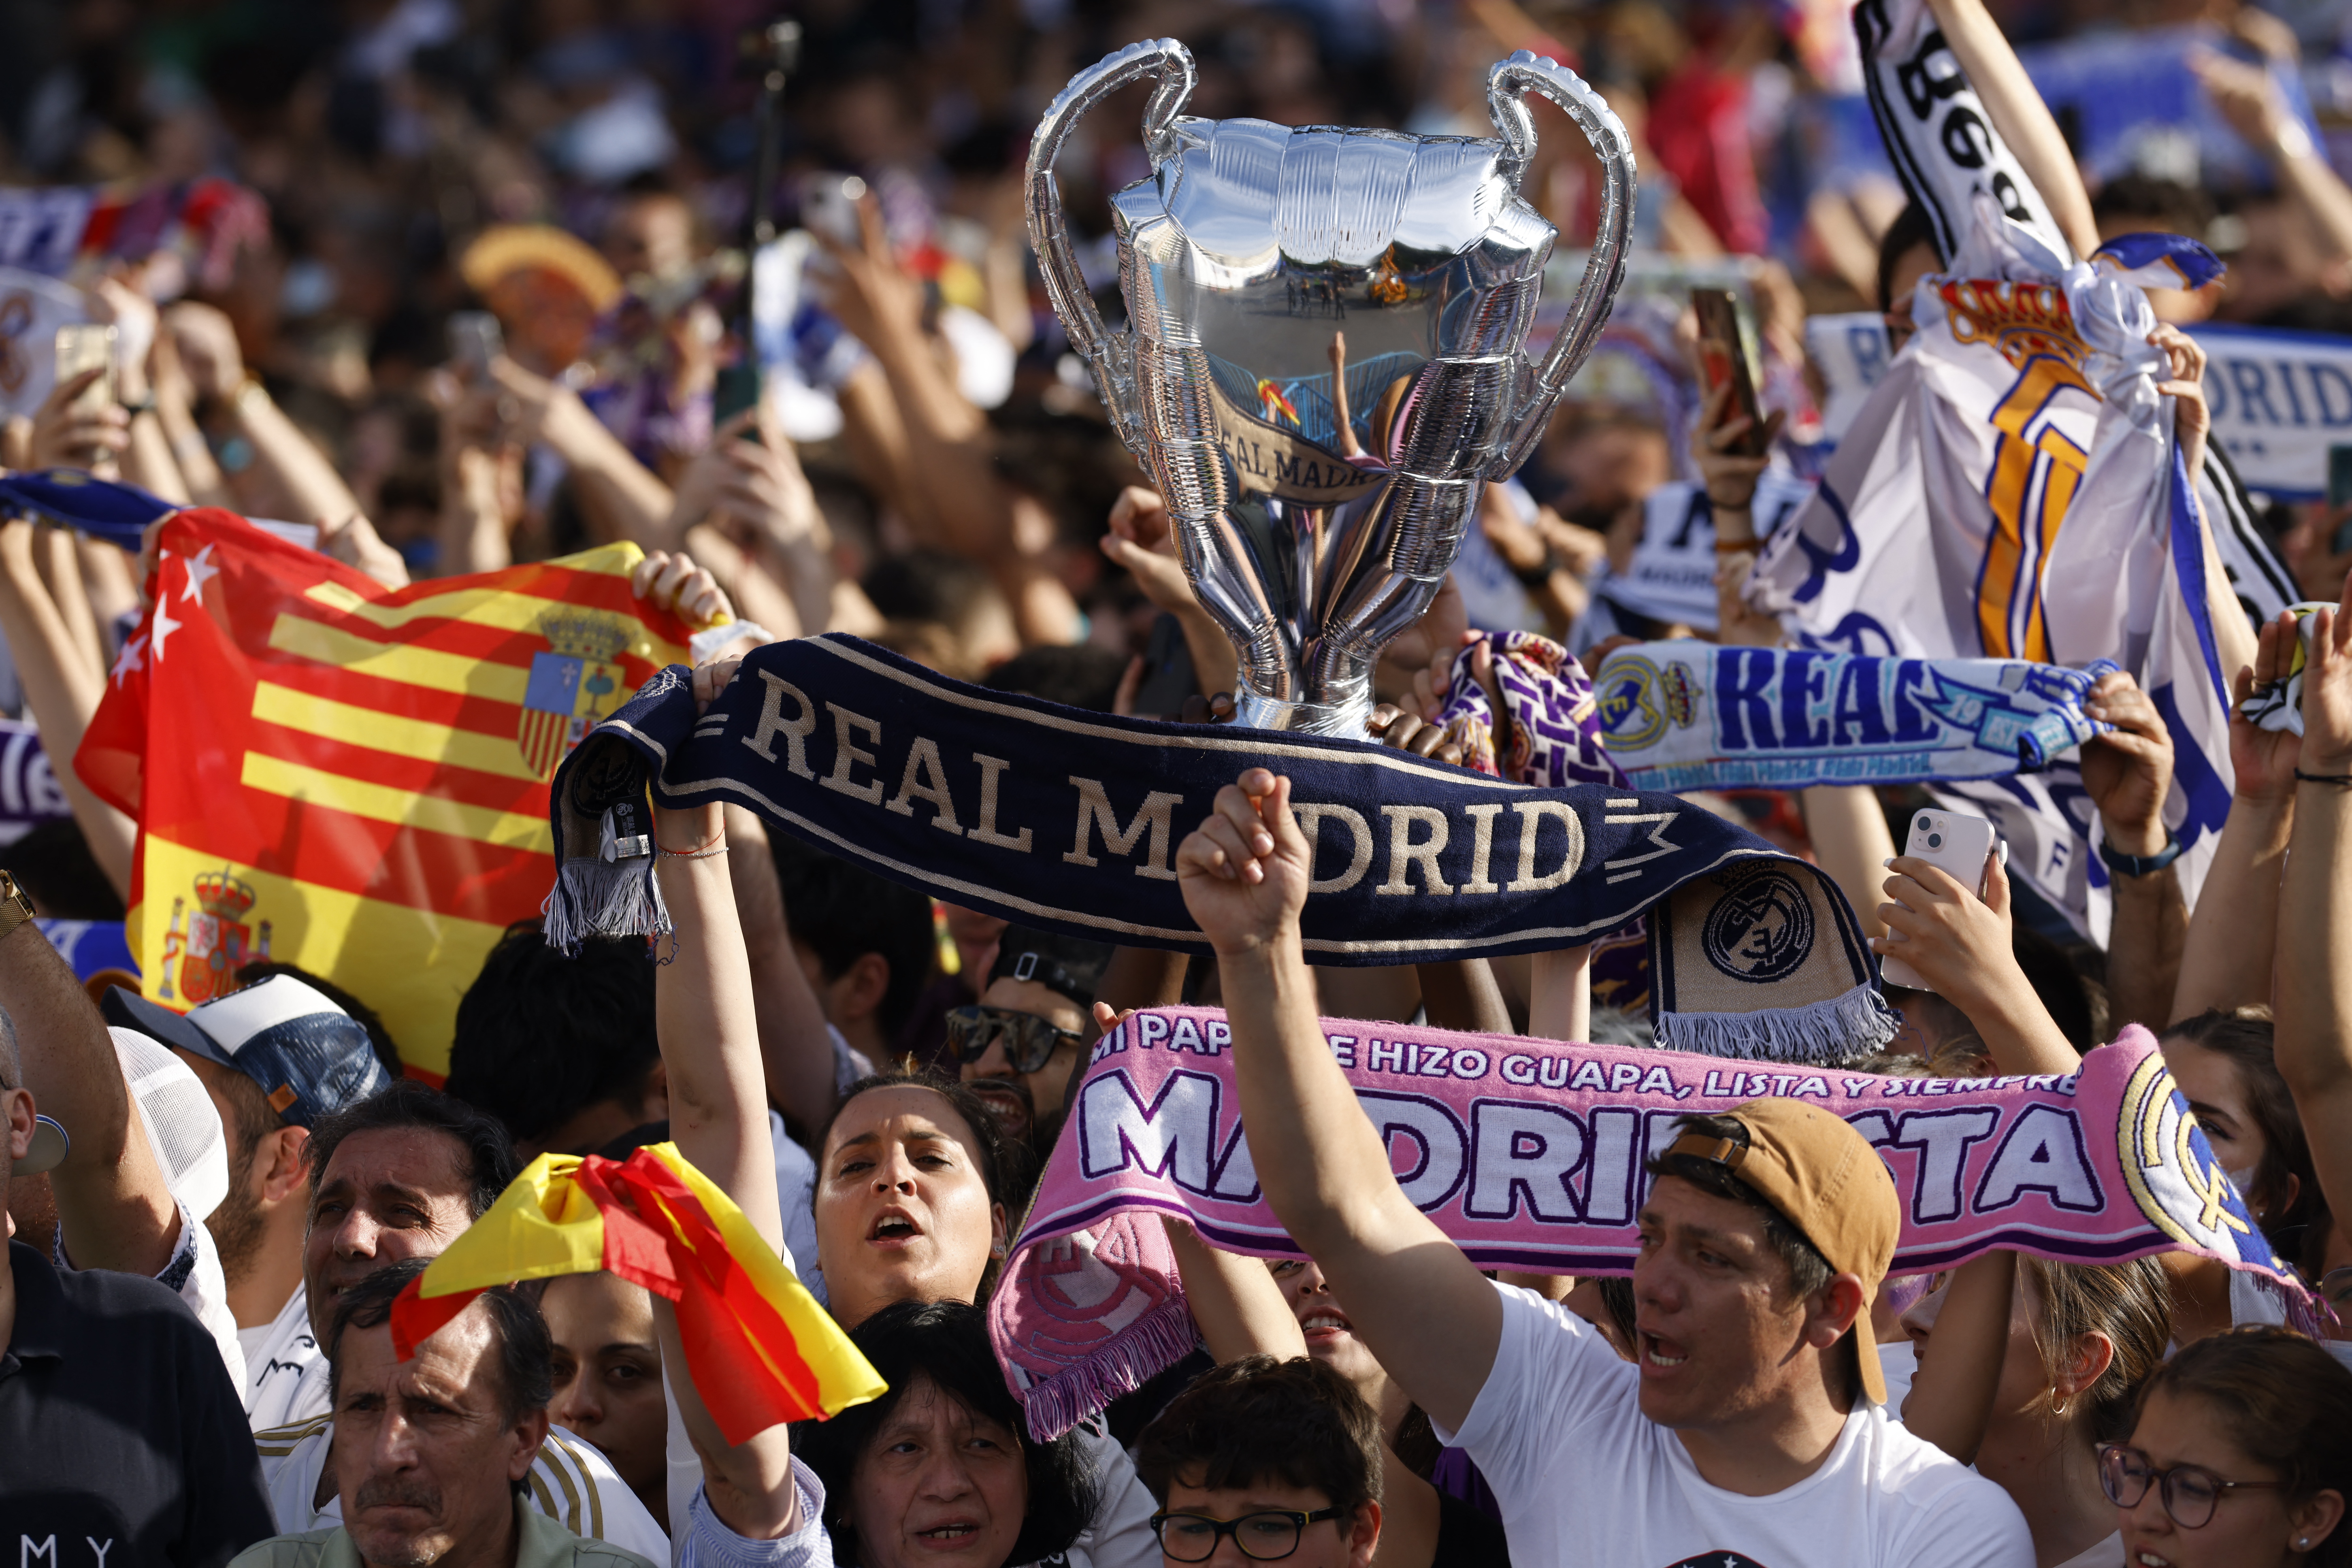 Real Madrid Fans. Real Fans. Real Madrid's Fans Famale.